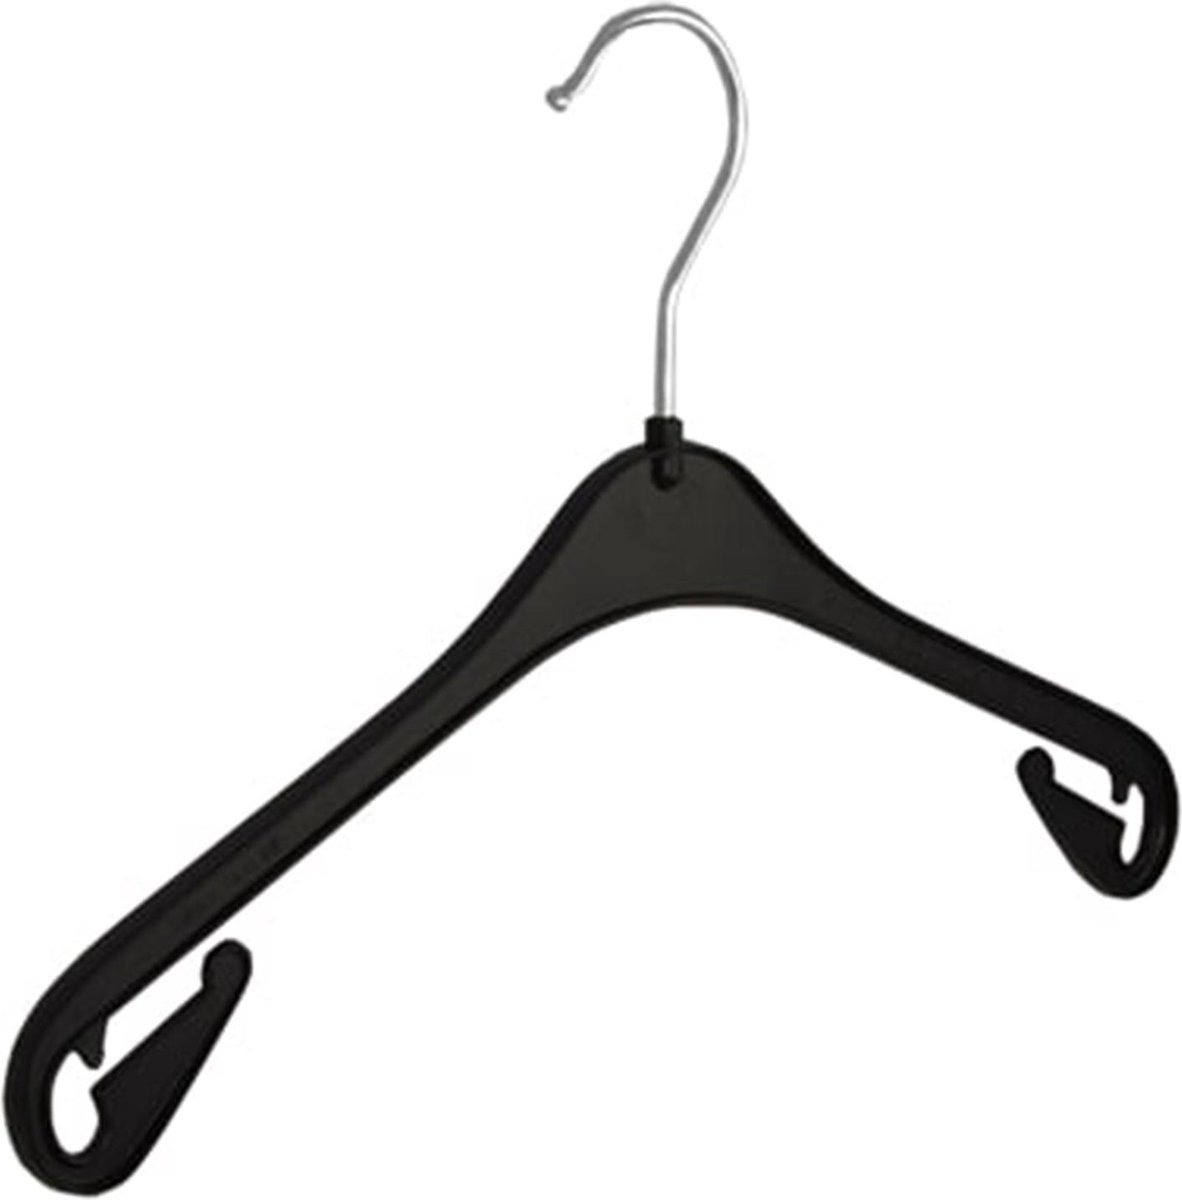 De Kledinghanger Gigant - 20 x Blousehanger / shirthanger / kinderhanger (NA33) kunststof zwart met rokinkepingen, 33 cm